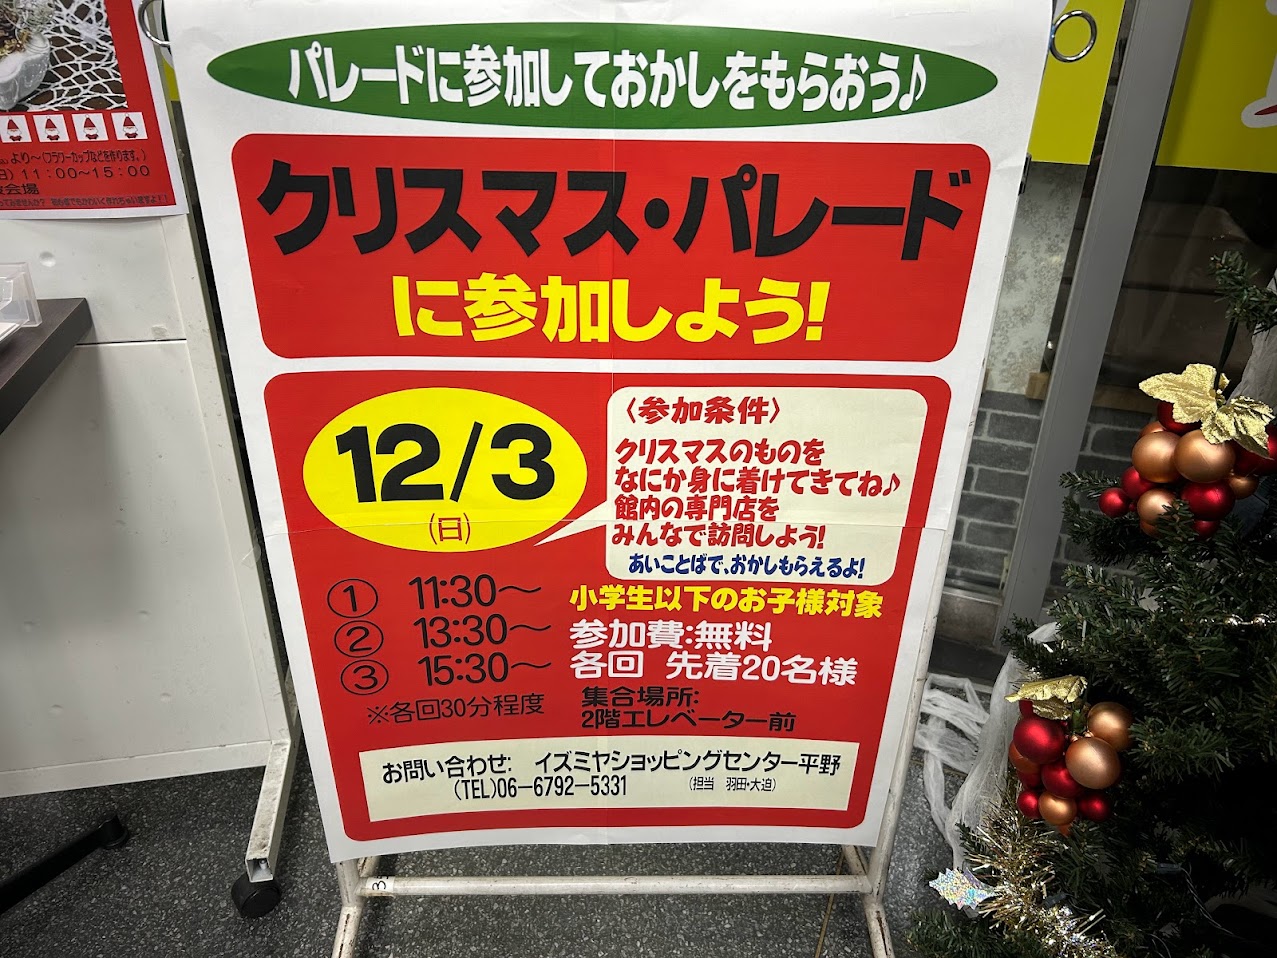 イズミヤショッピングセンター平野クリスマスパレードお知らせ1